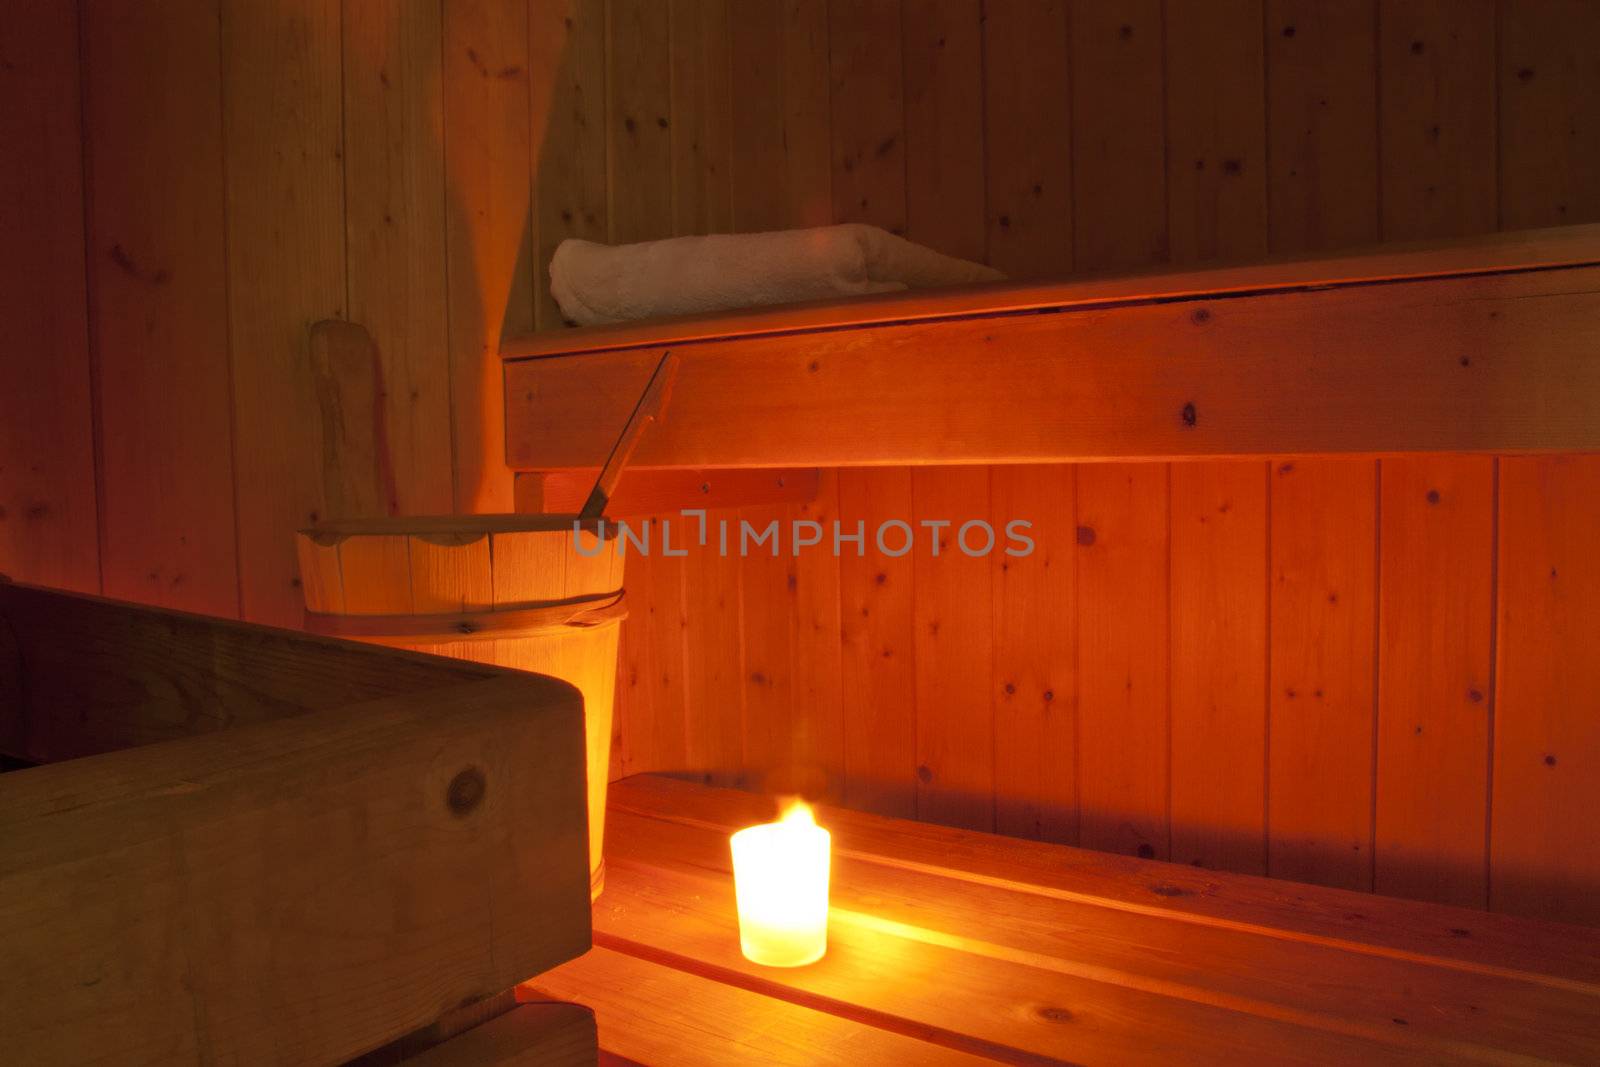 A lit candle inside a wooden finnish sauna